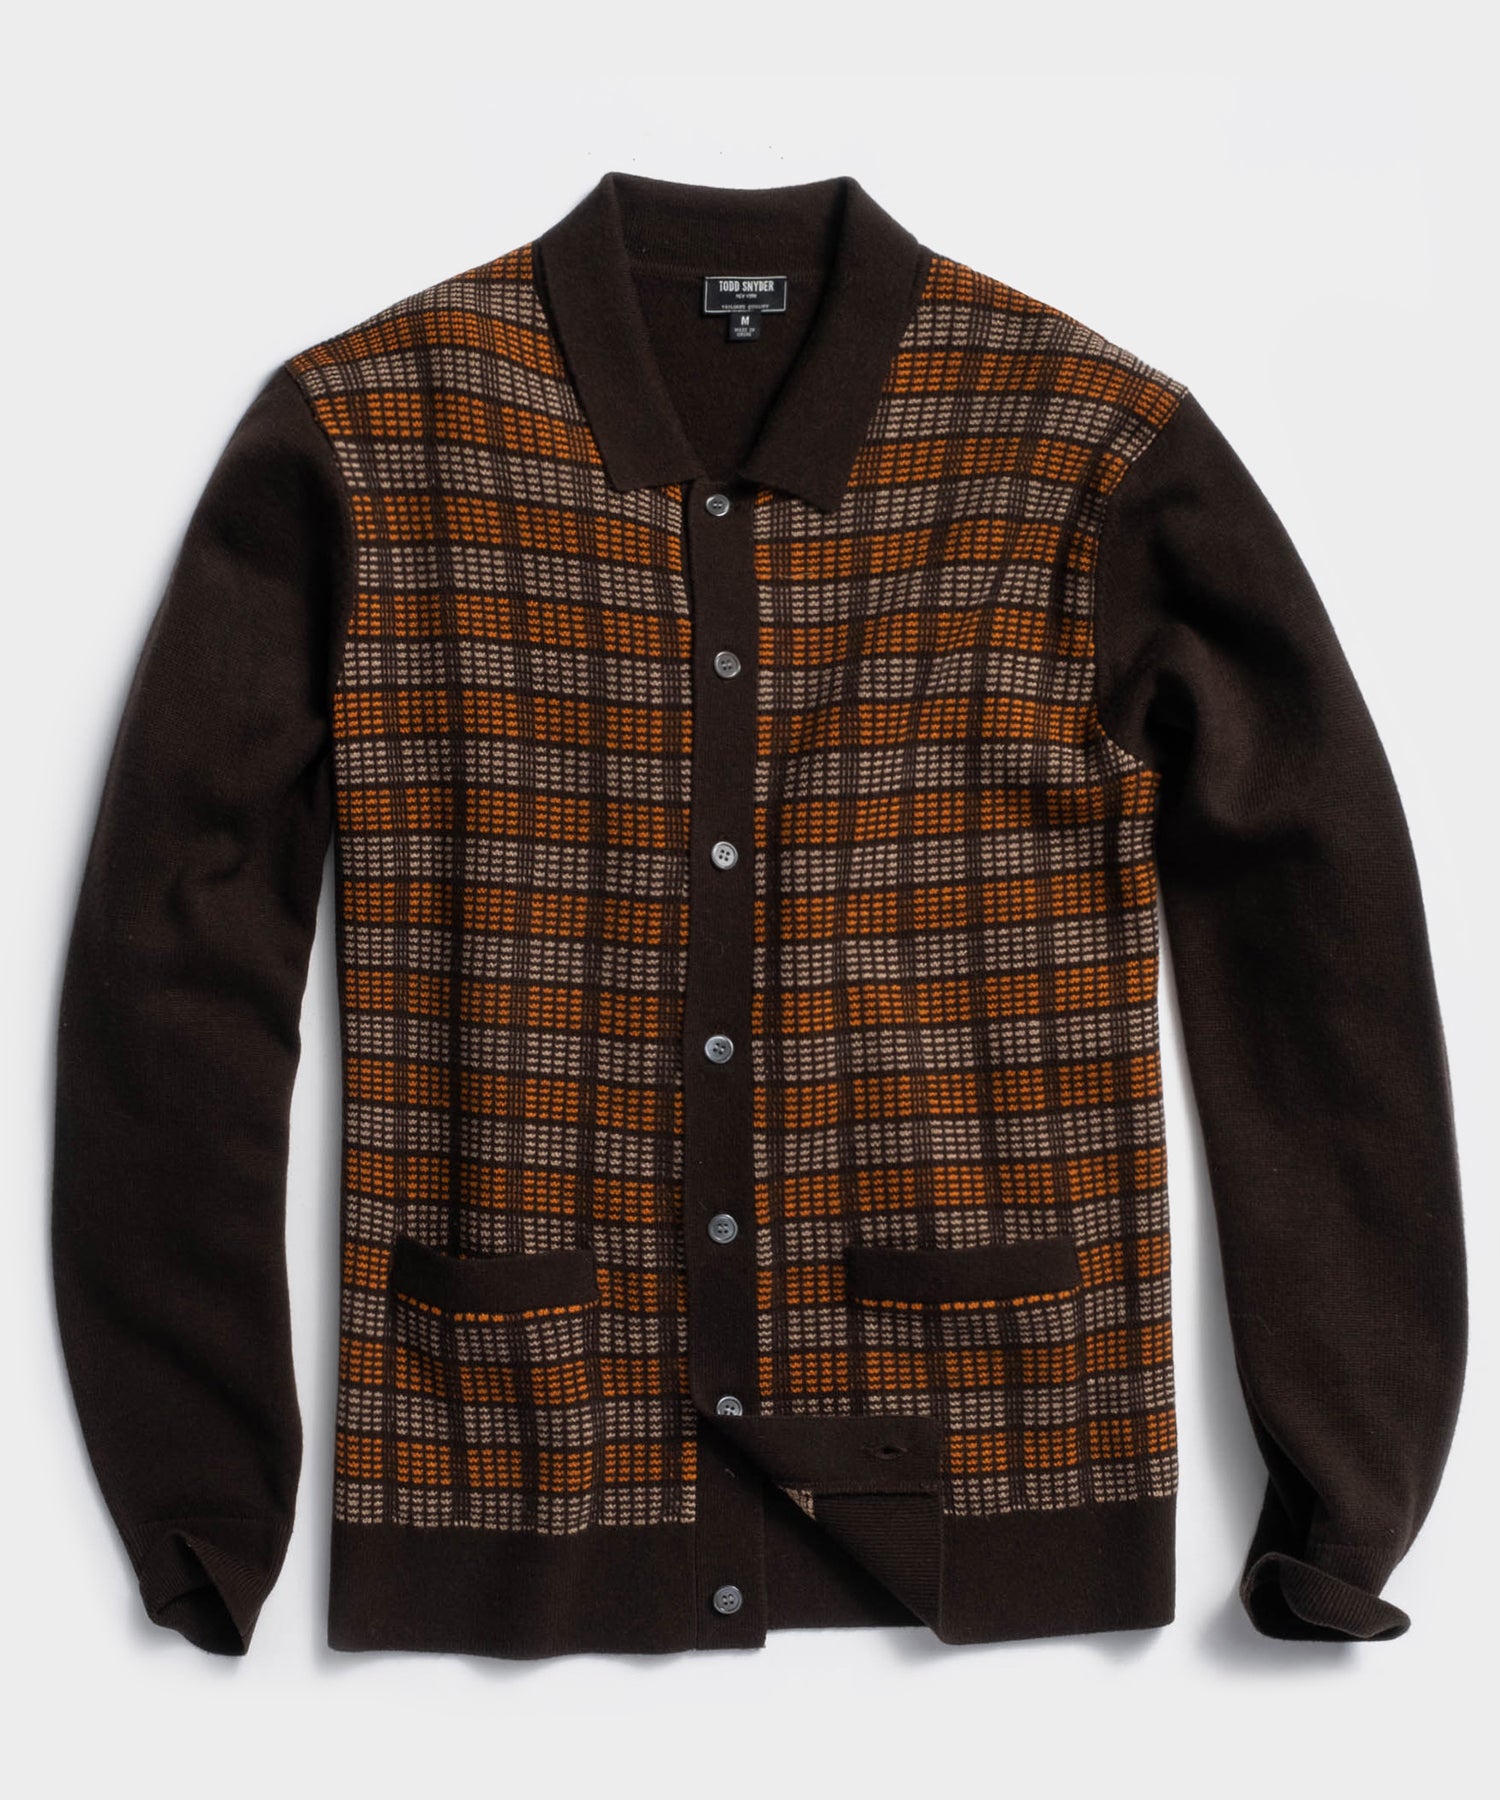 Image of Italian Merino Sweater Polo Cardigan in Brown